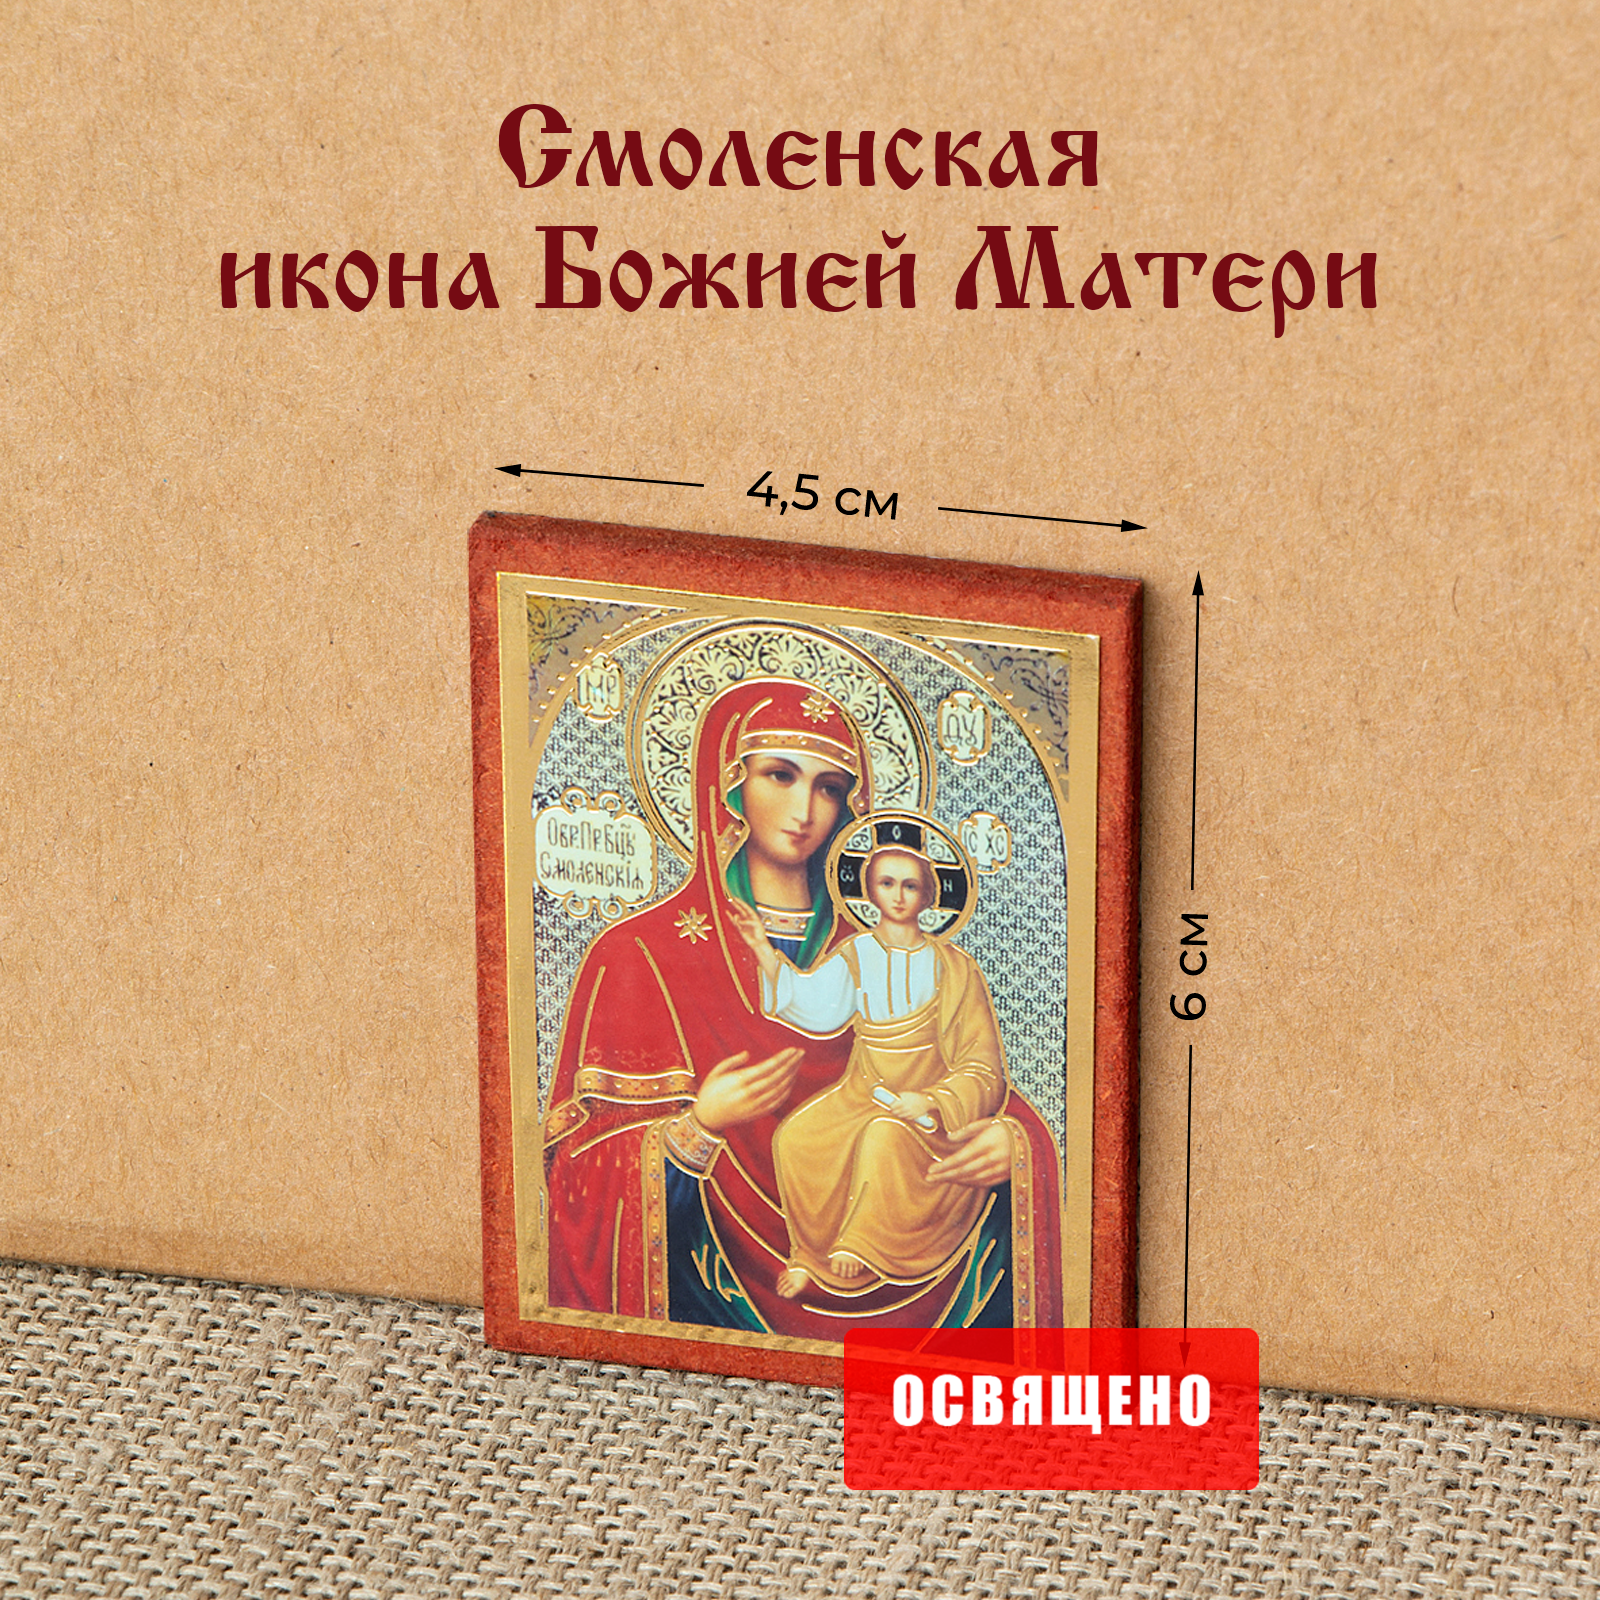 Икона Божией Матери "Смоленская" на МДФ 4х6